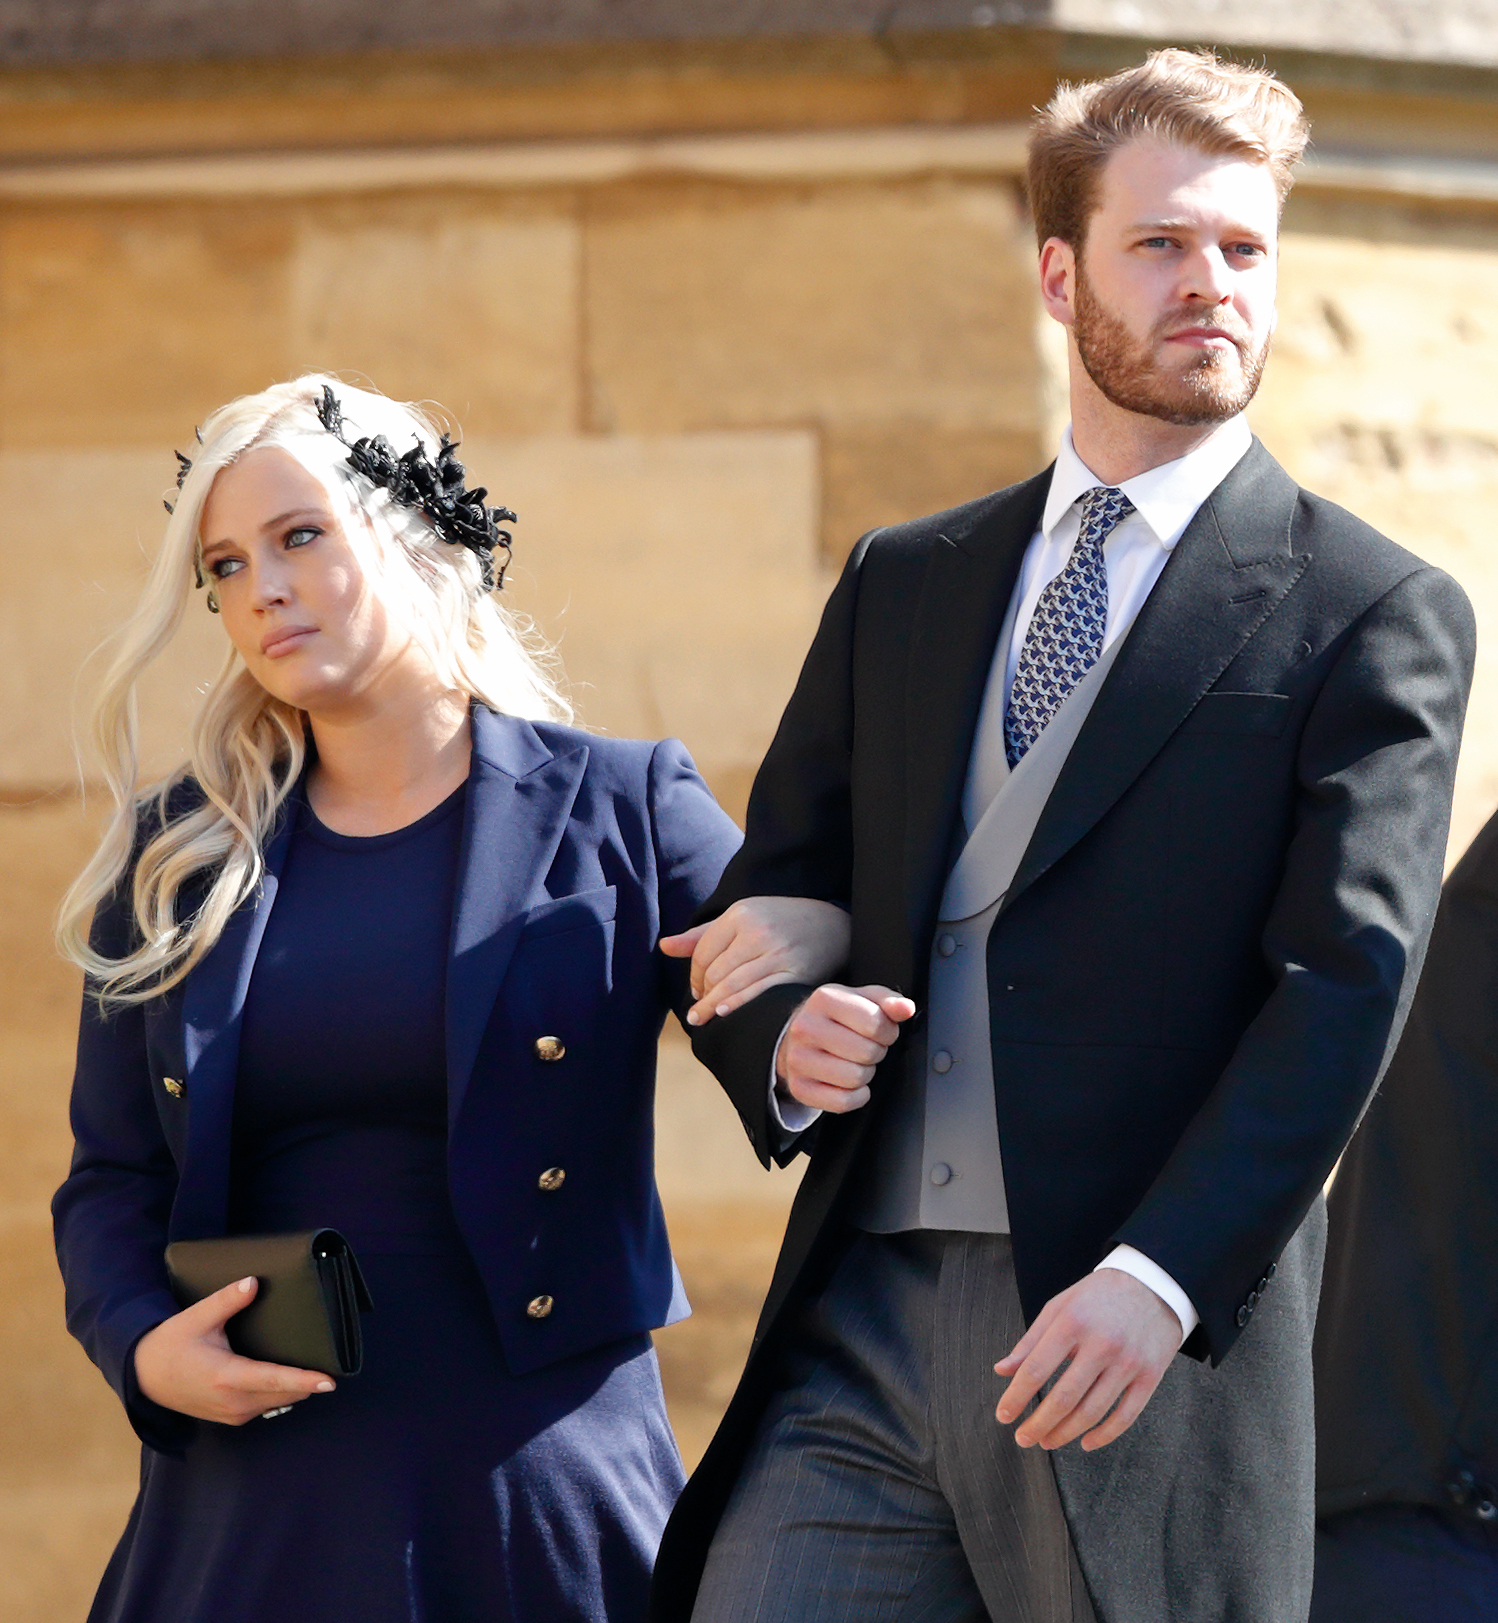 Lady Eliza Spencer y Louis Spencer asisten a la boda del príncipe Harry y Meghan Markle en la capilla de St George del castillo de Windsor el 19 de mayo de 2018 en Windsor, Inglaterra. | Fuente: Getty Images